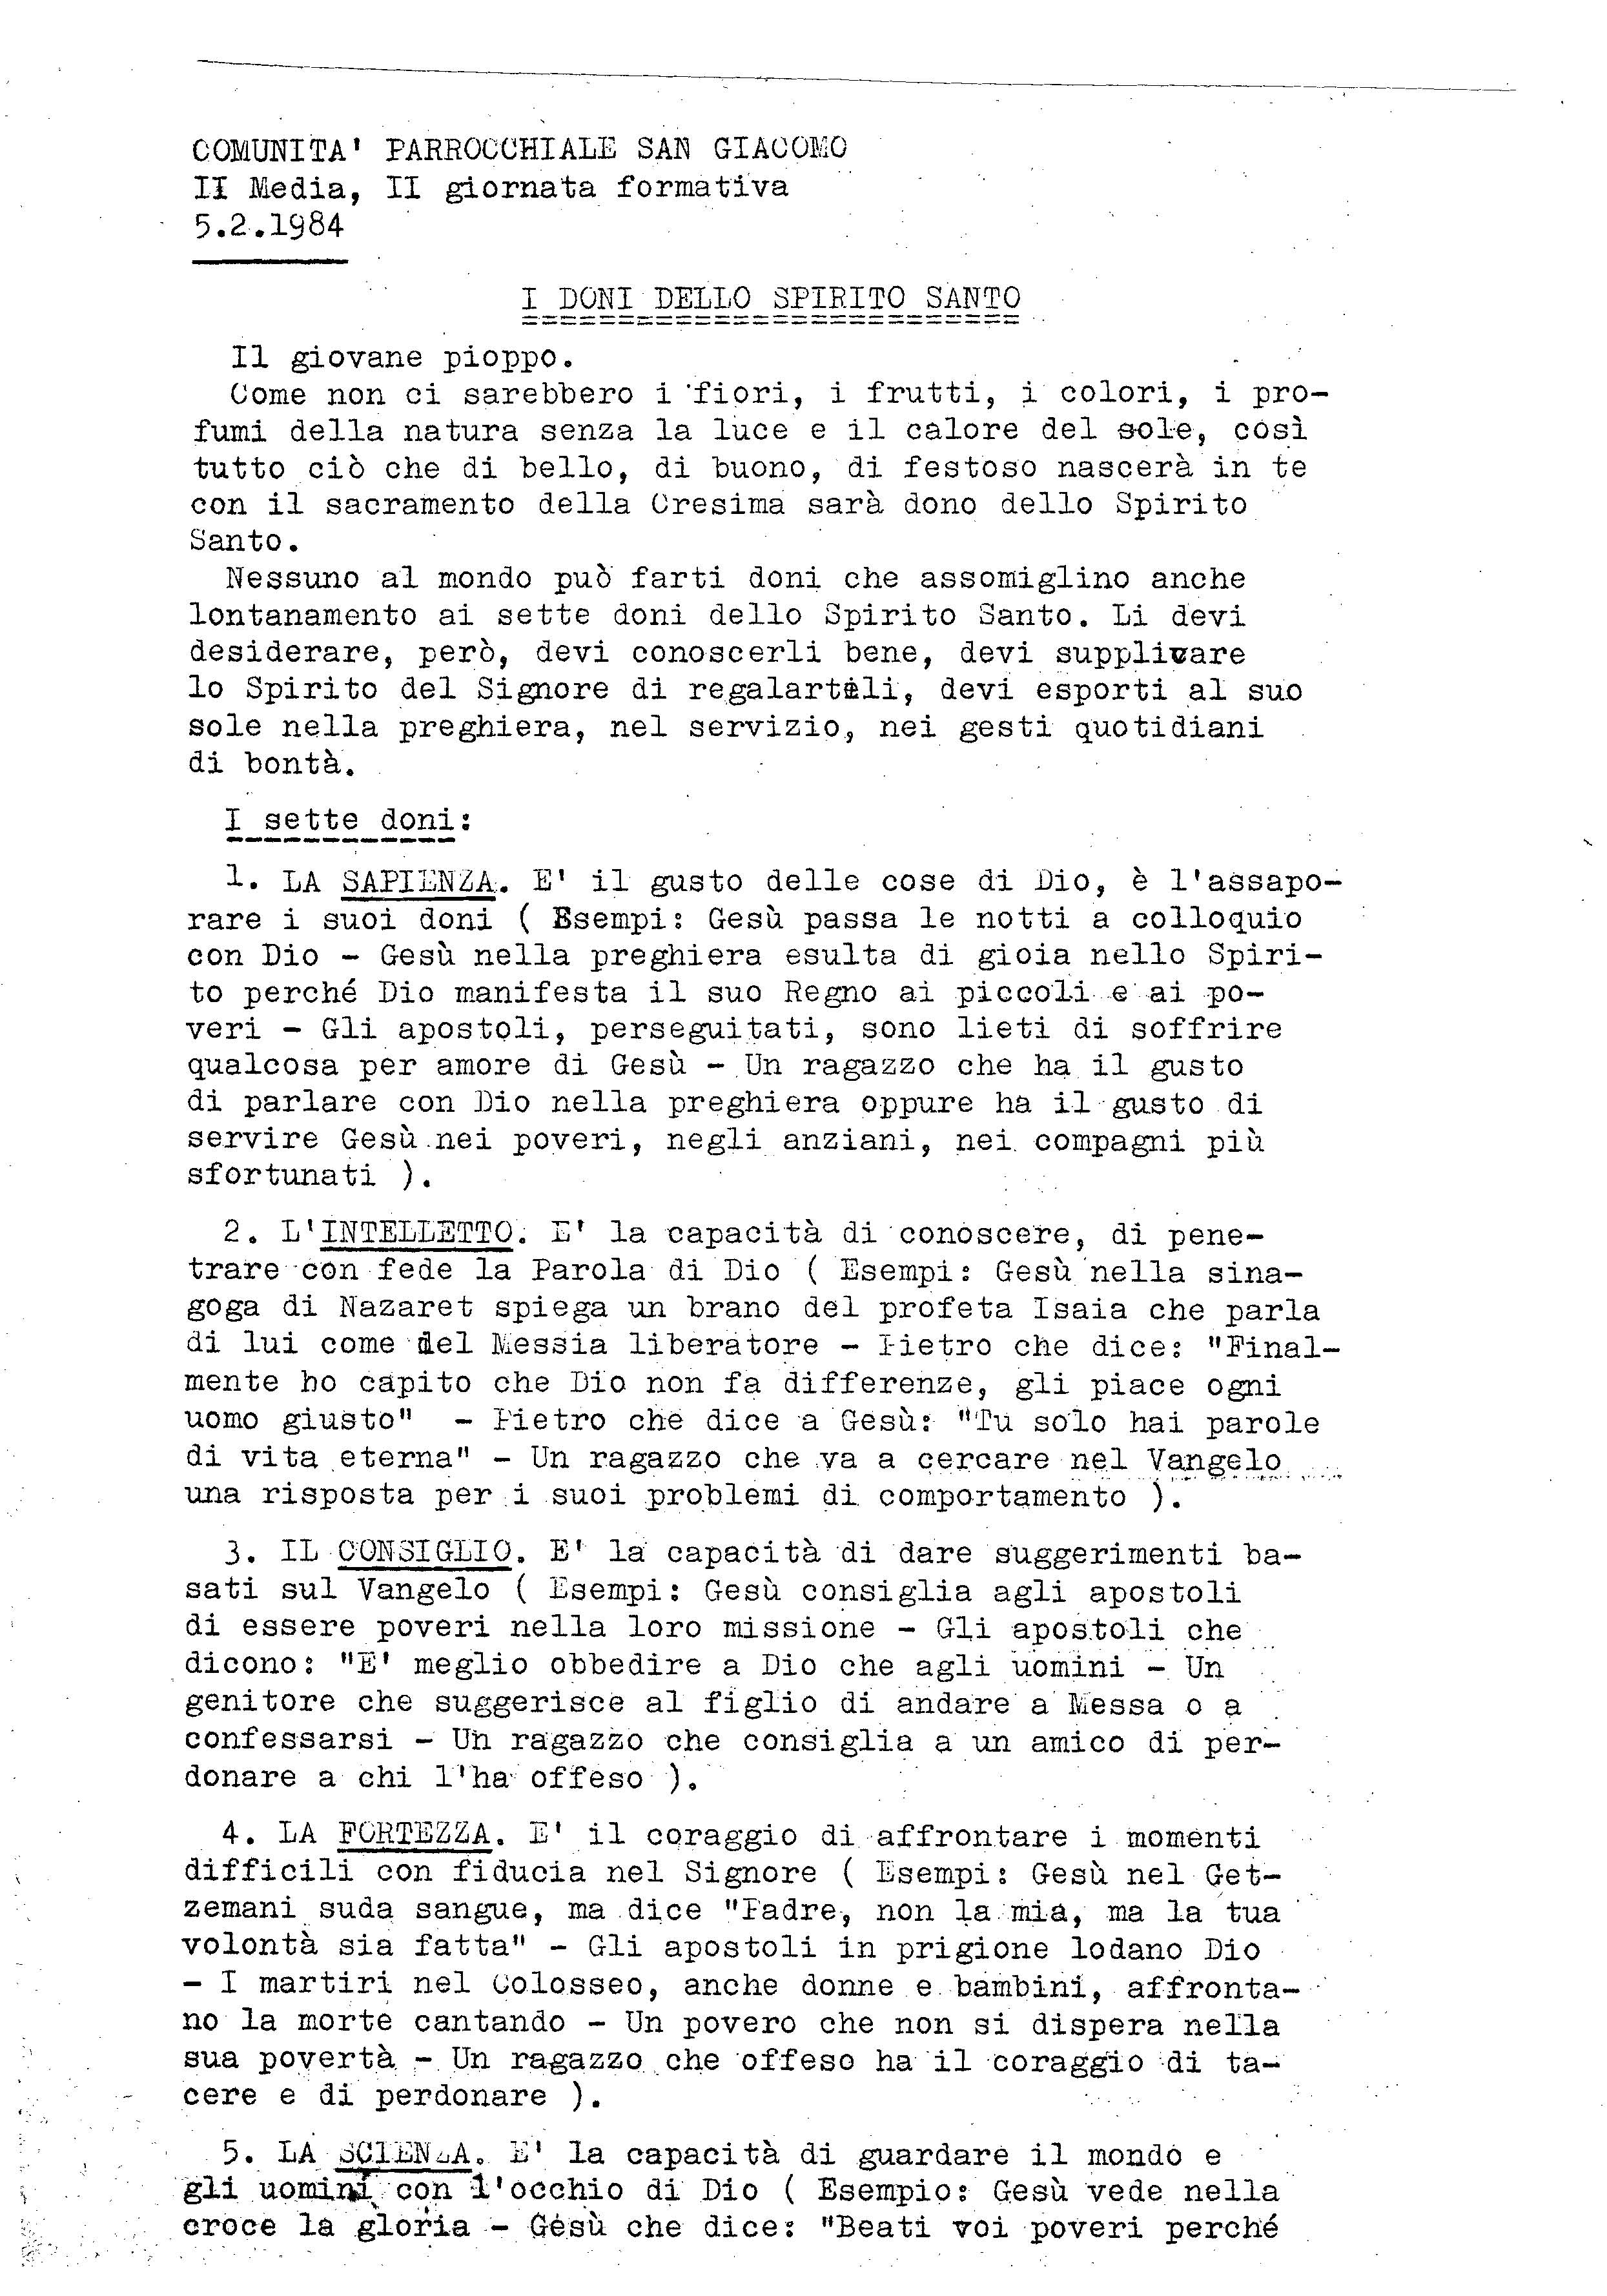 Cresima1985_I-doni_dello_spirito.pdf